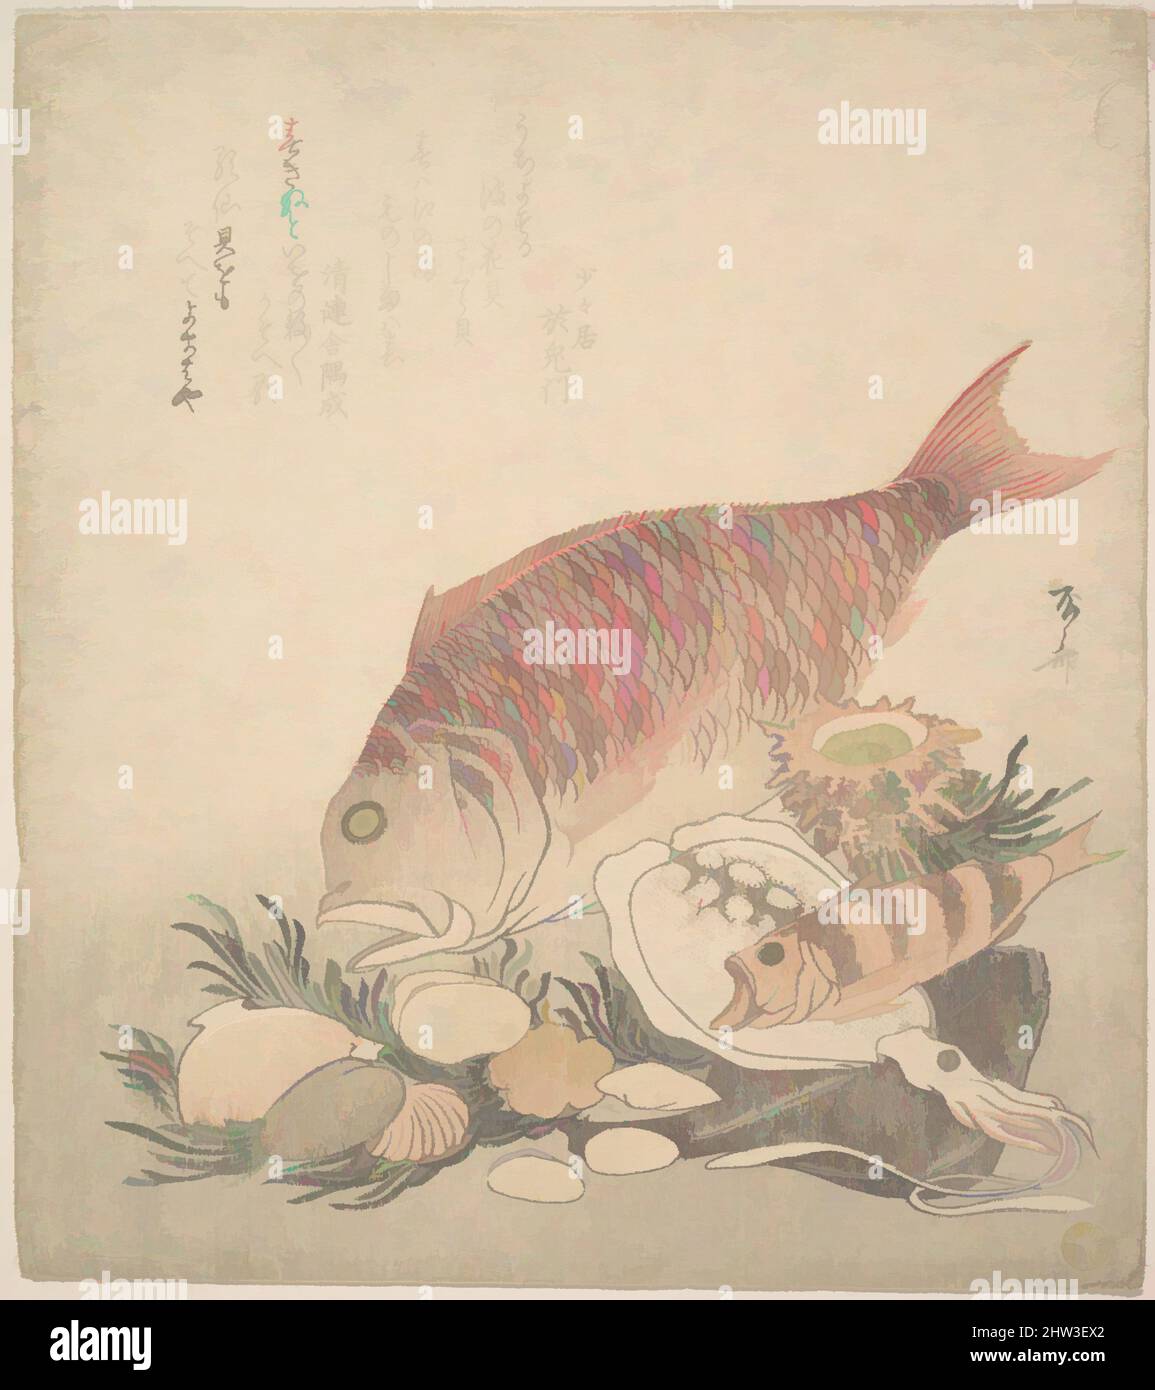 Art inspiré par les grands et petits poissons naissant parmi les coquillages et les mousses au fond de la mer, période Edo (1615–1868), env. 1830, Japon, imprimé polychrome (surimono); encre et couleur sur papier, 8 5/8 x 7 5/8 po. (21,9 x 19,4 cm), tirages, Ryūryūkyo Shinsai (japonais, active ca. 1799, œuvres classiques modernisées par Artotop avec une touche de modernité. Formes, couleur et valeur, impact visuel accrocheur sur l'art émotions par la liberté d'œuvres d'art d'une manière contemporaine. Un message intemporel qui cherche une nouvelle direction créative. Artistes qui se tournent vers le support numérique et créent le NFT Artotop Banque D'Images